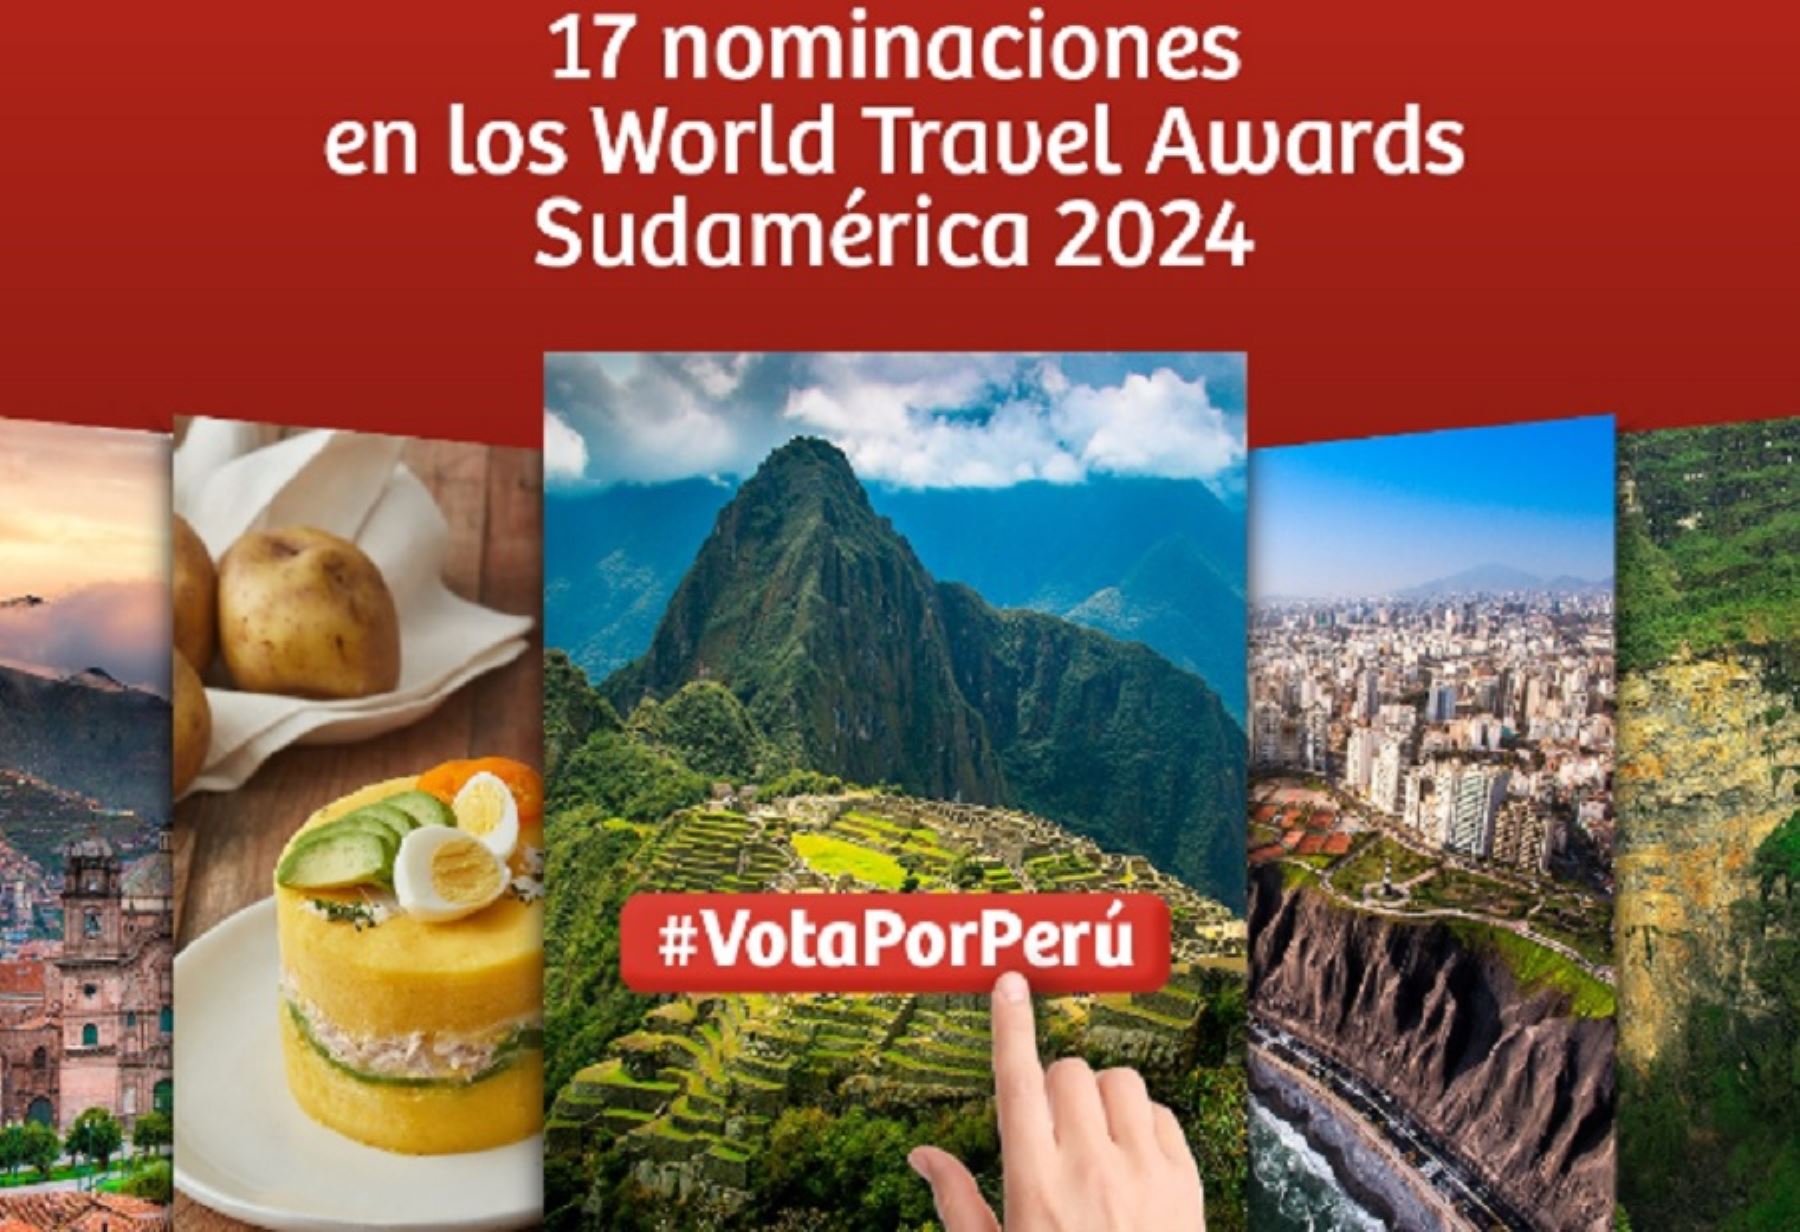 Perú vuelve a ser un importante competidor en la trigésima primera edición de los World Travel Awards Sudamérica 2024, con 17 nominaciones lideradas por Machu Picchu, estandarte turístico nacional, patrimonio de la humanidad y maravilla mundial que aspira a coronarse por séptima vez consecutiva.